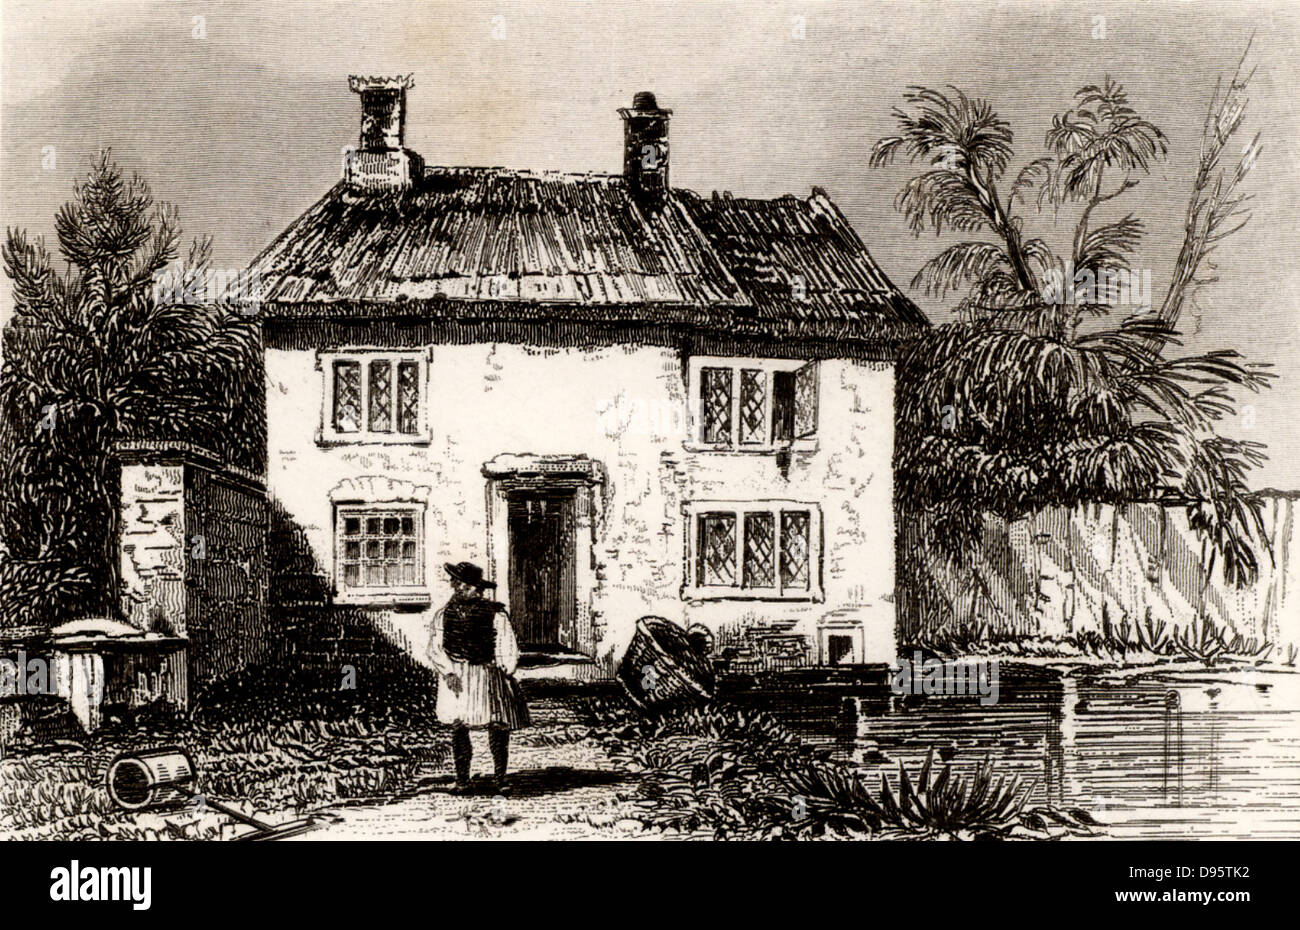 Casa rural en Wrington en North Somerset, cerca de Bristol, Inglaterra, el lugar de nacimiento de John Locke (1632-1704), filósofo y científico inglés, uno de los fundadores de la ilustración. Grabado de "Inglaterra y Gales delineado' de Thomas Dugdale (Londres, c1840). Foto de stock